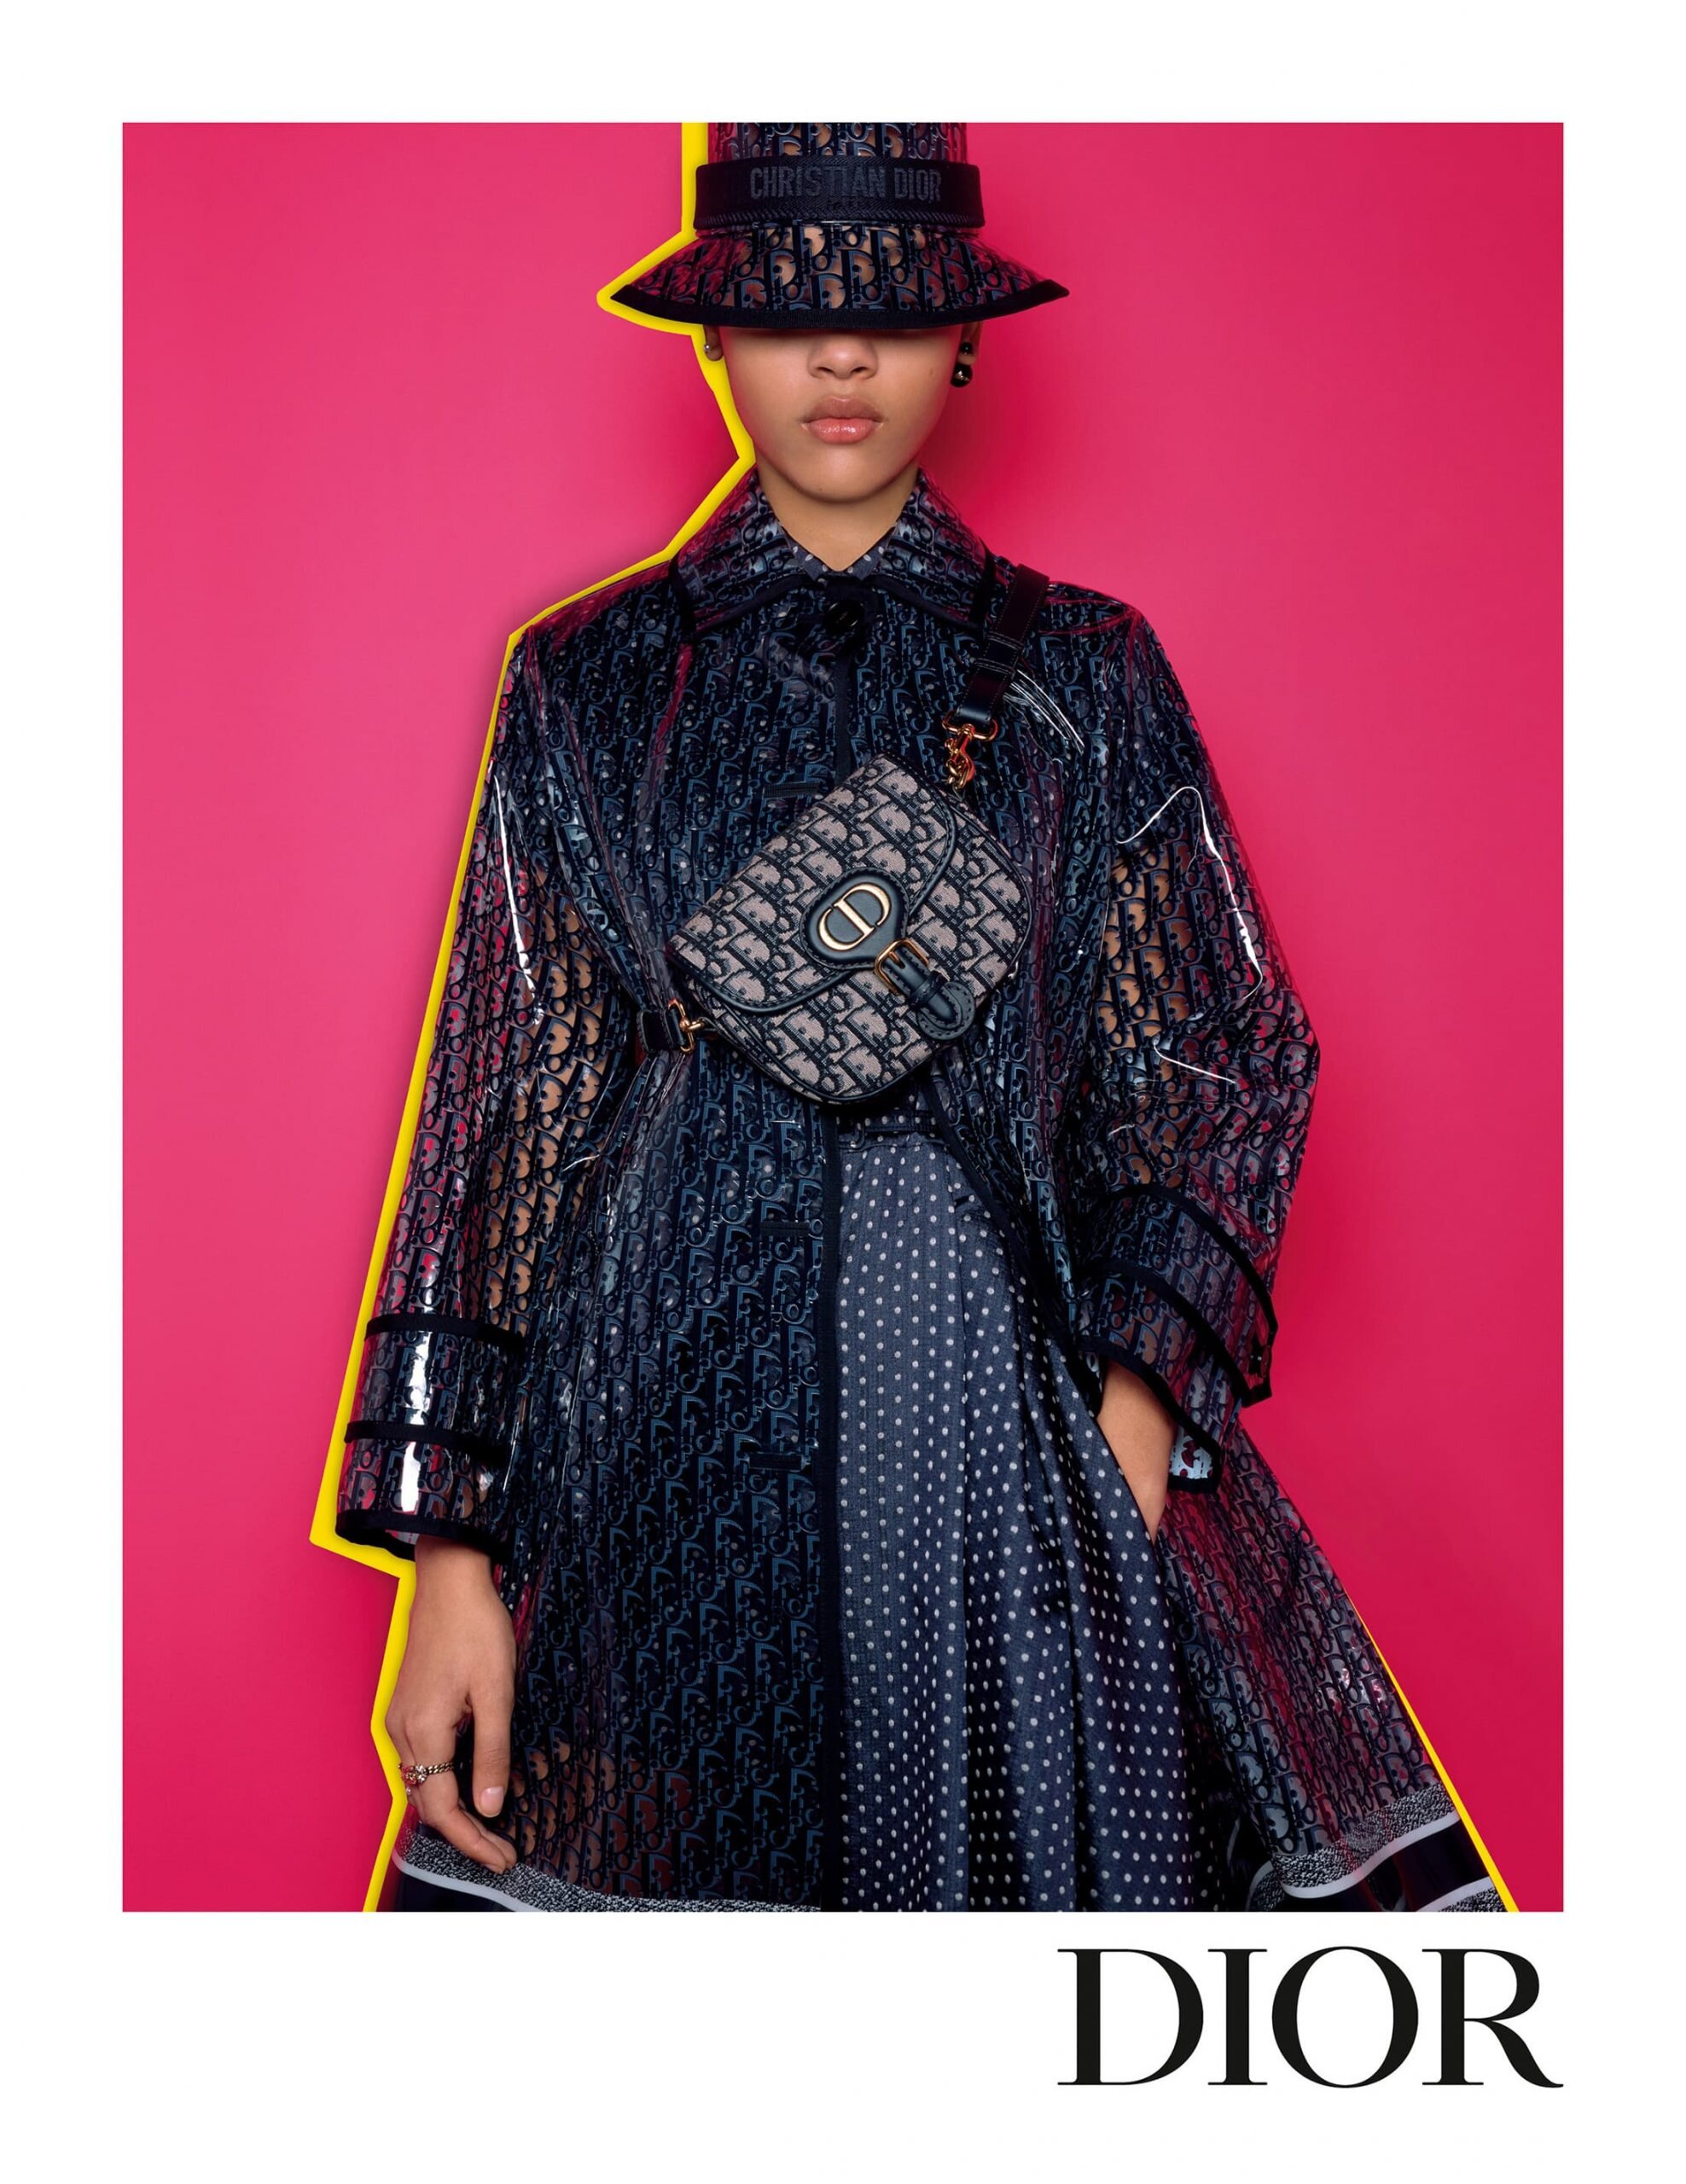 Brigitte Niedermair Dior Women Fall 2021 Campaign (10).jpg